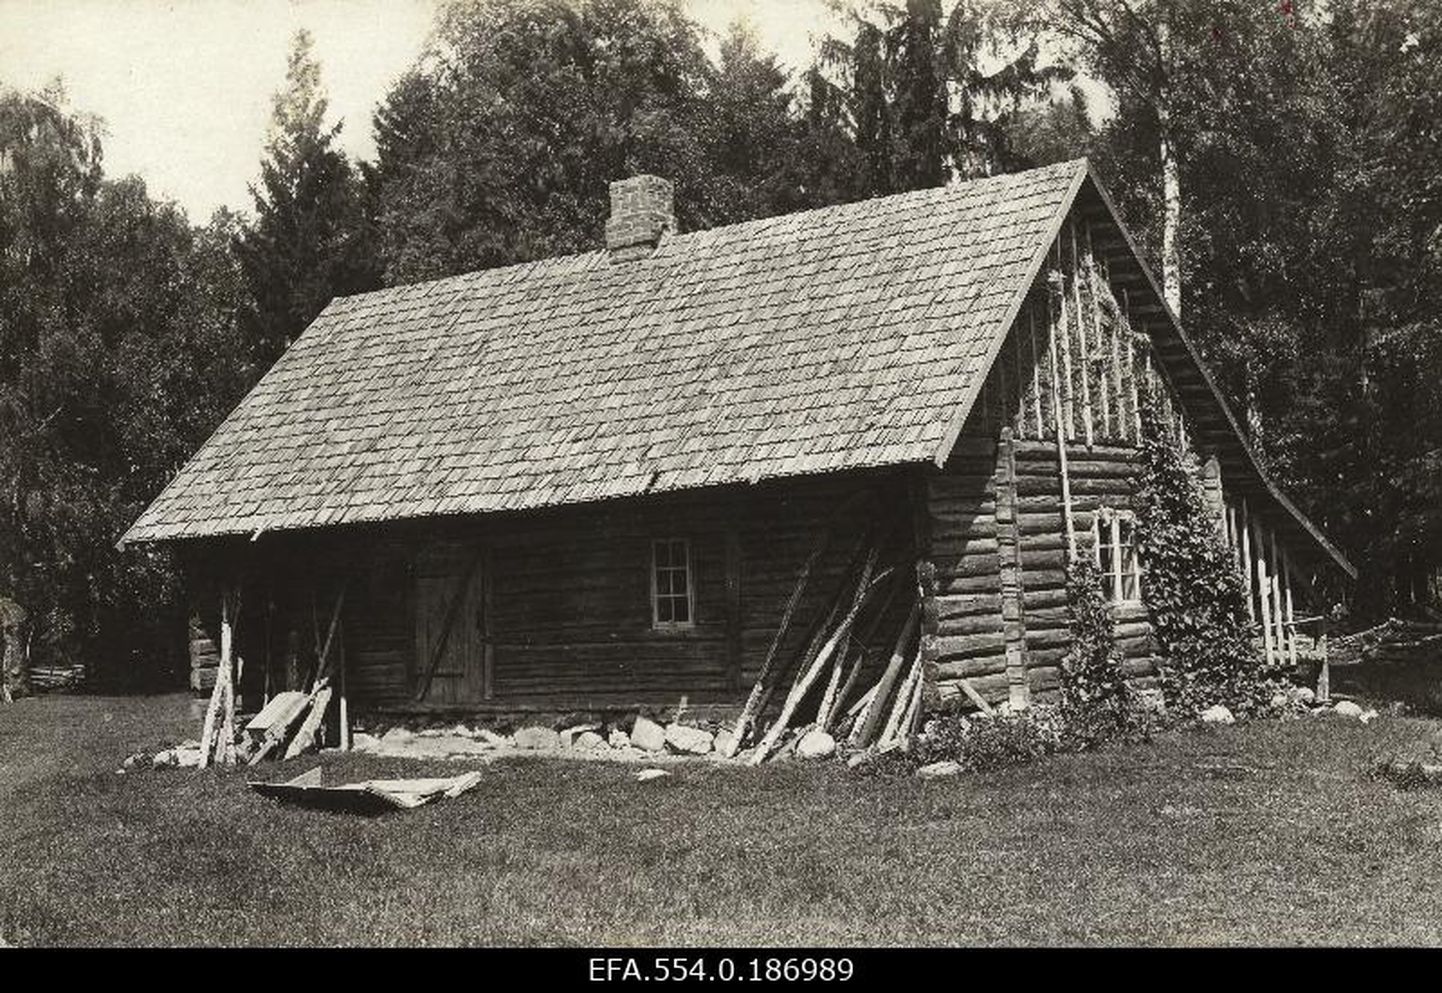 Эстонская сауна 1920-х годов. Снисок иллюстративный